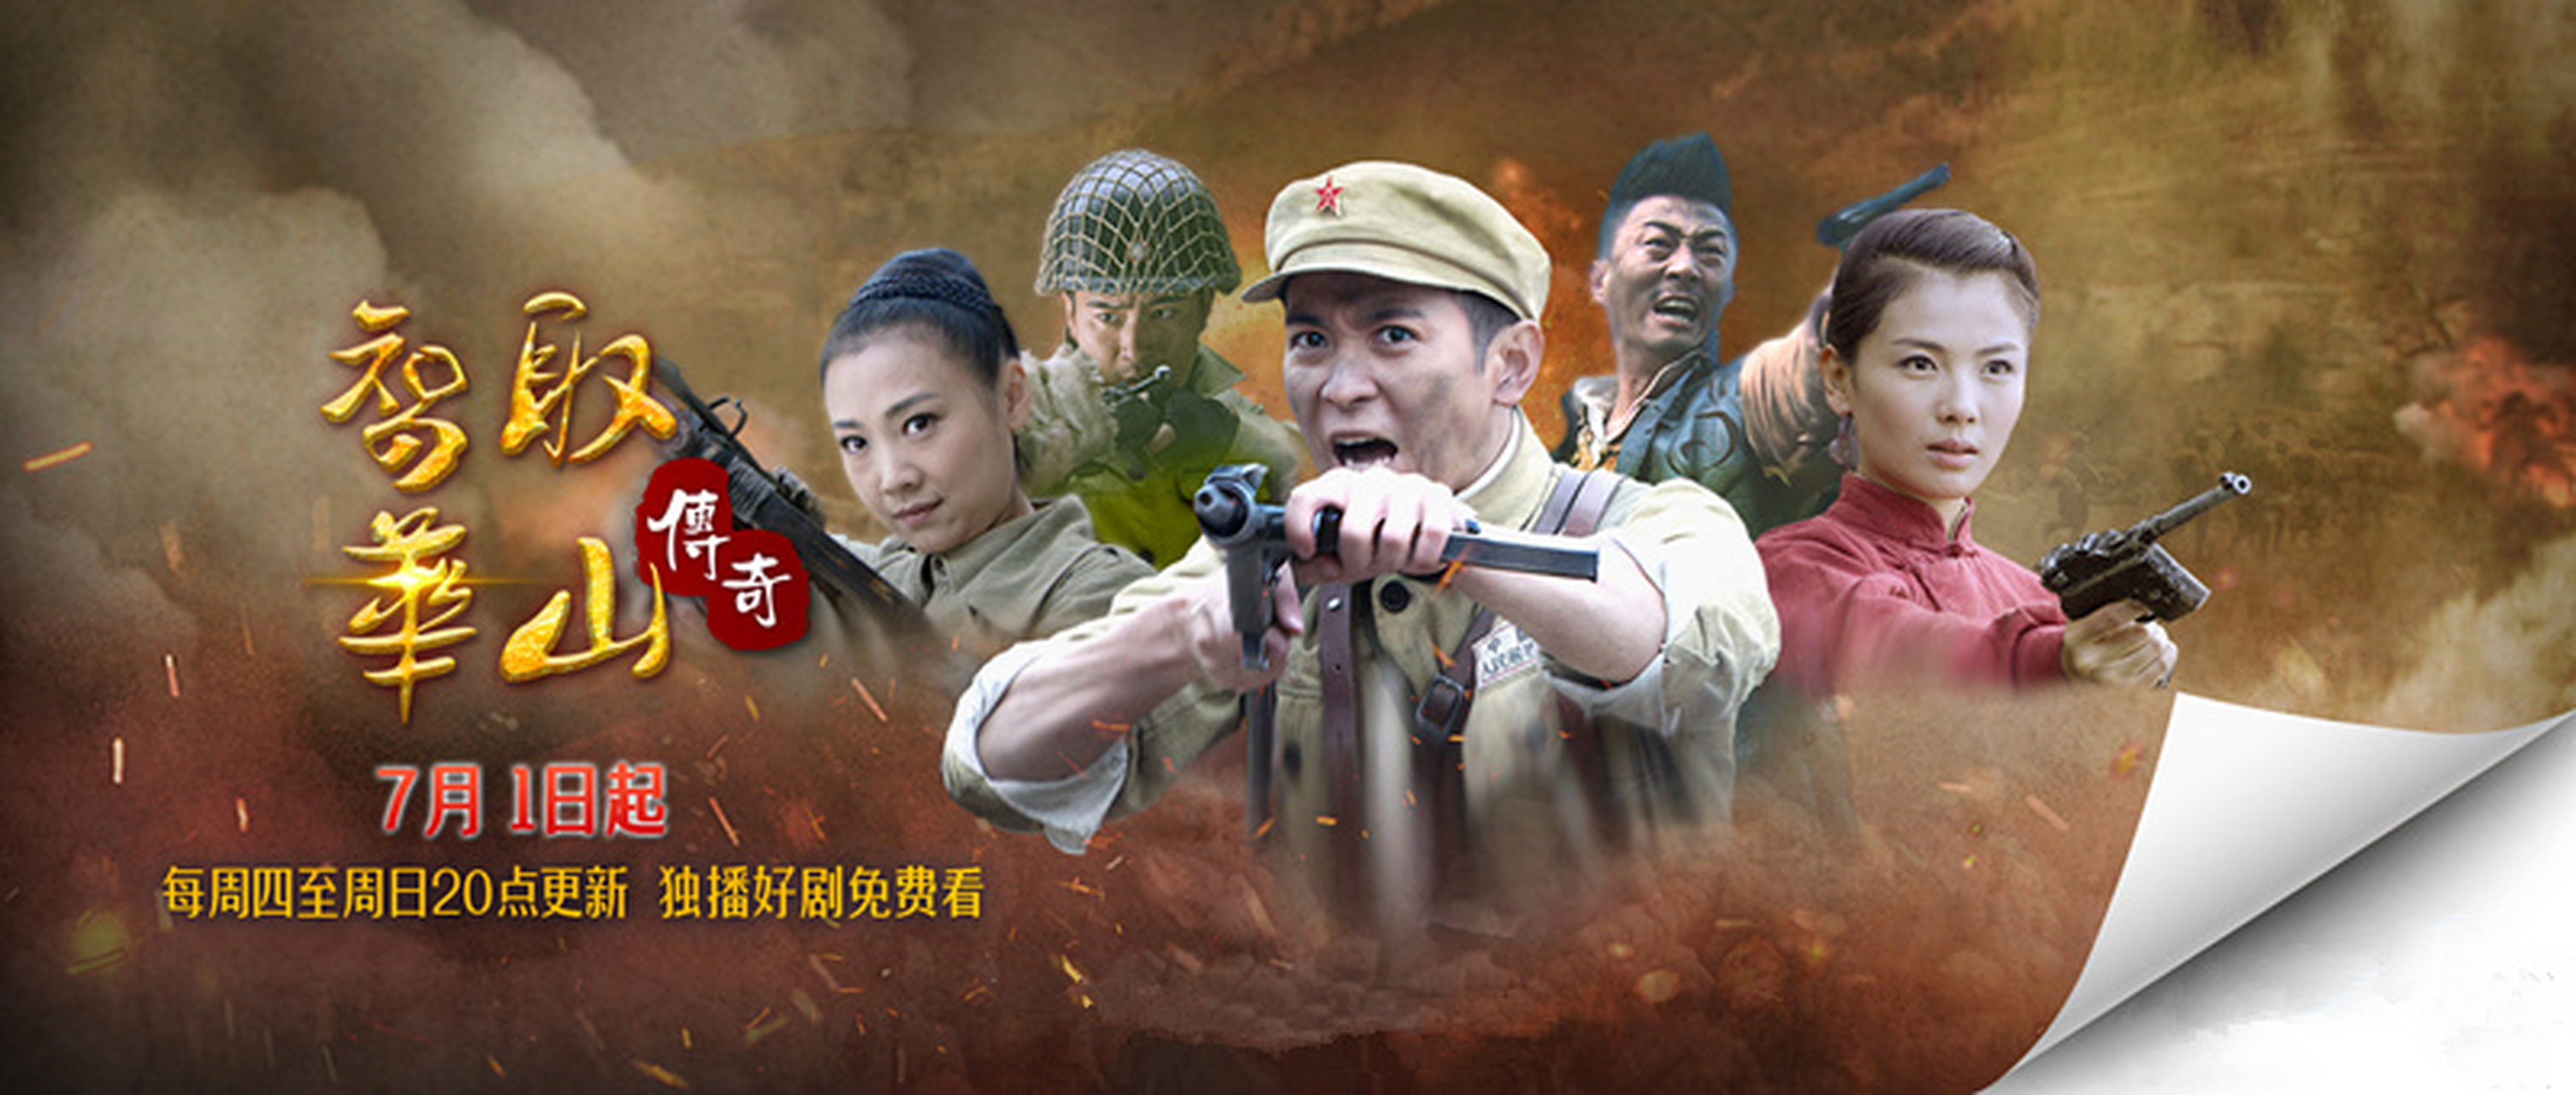 7月1日,搜狐视频方面放出电视剧《智取华山传奇》的定档预告片和海报